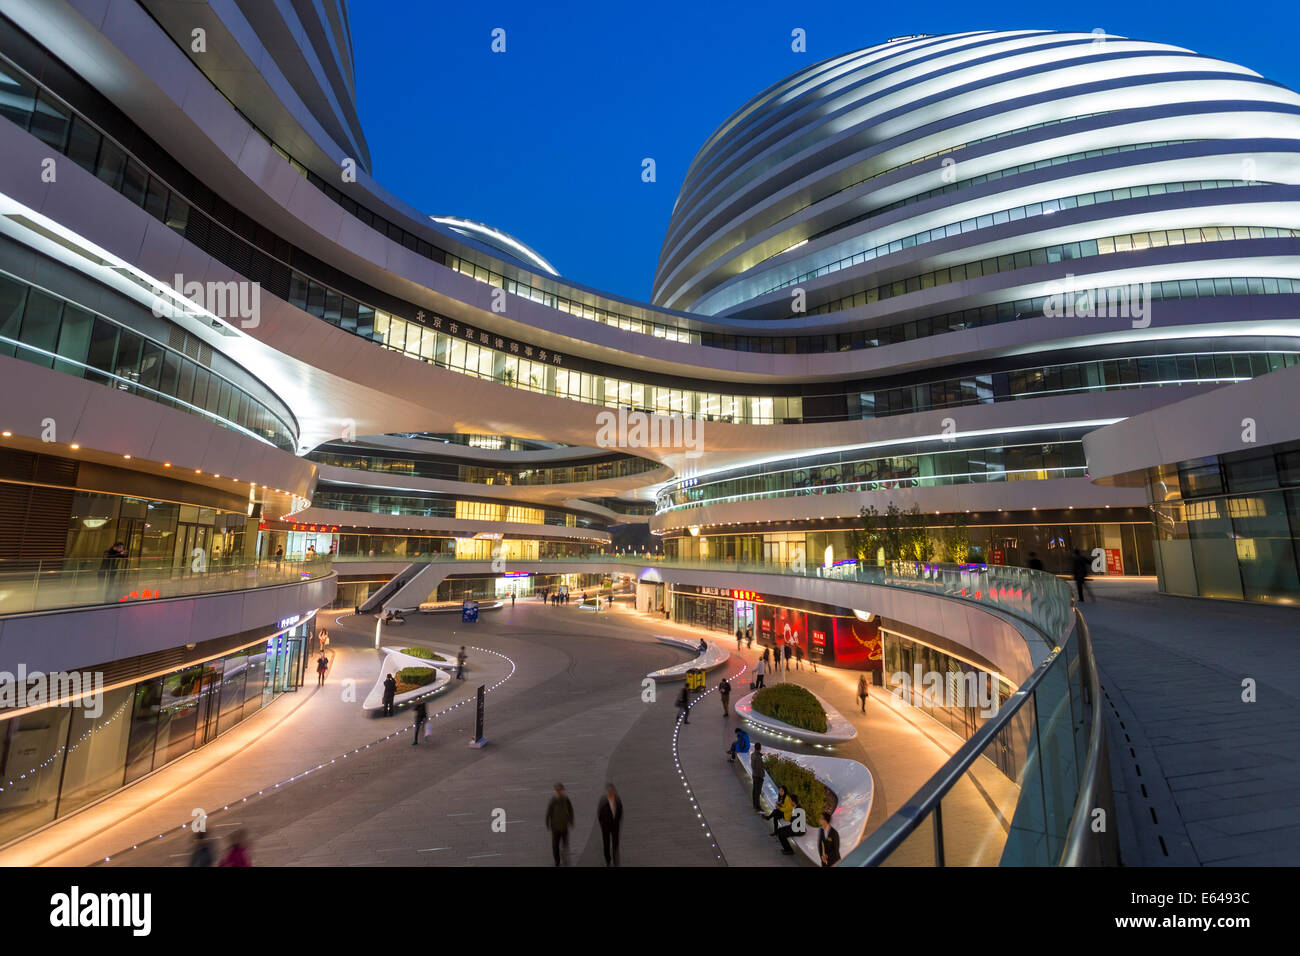 La nouvelle galaxie Soho bâtiment conçu par l'architecte Zaha Hadid, Beijing, Chine Banque D'Images